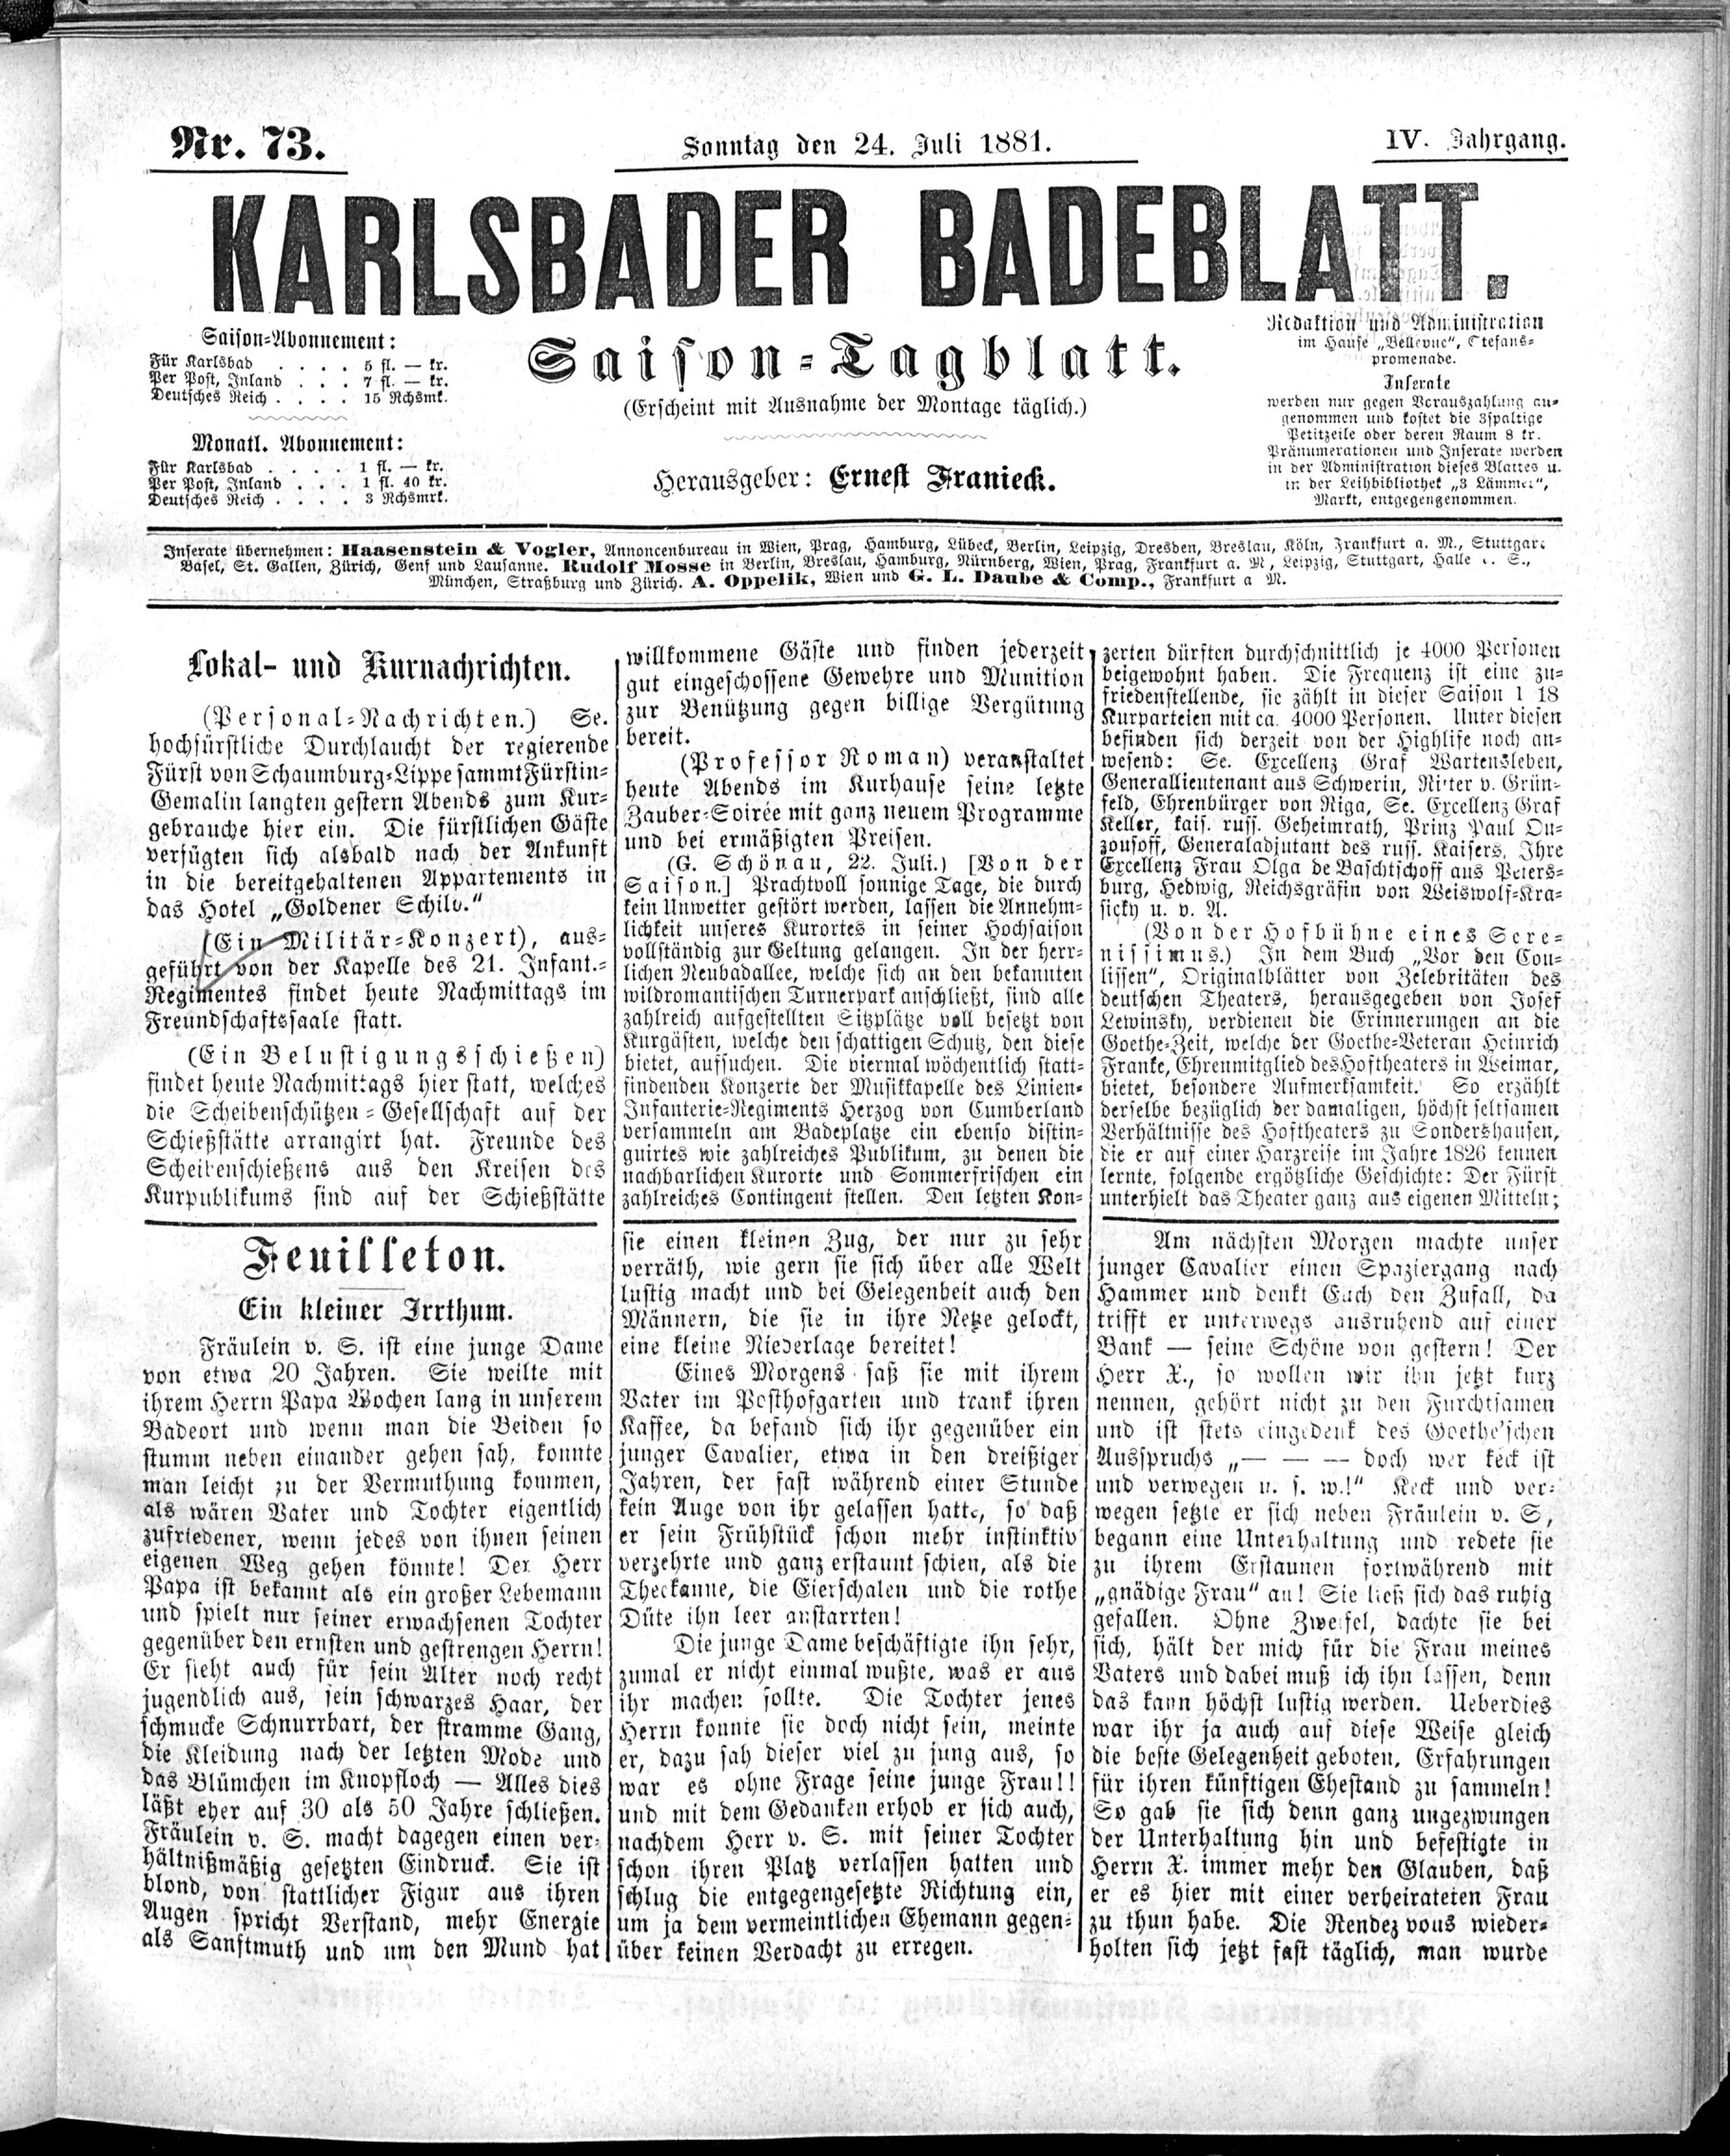 1. karlsbader-badeblatt-1881-07-24-n73_1505